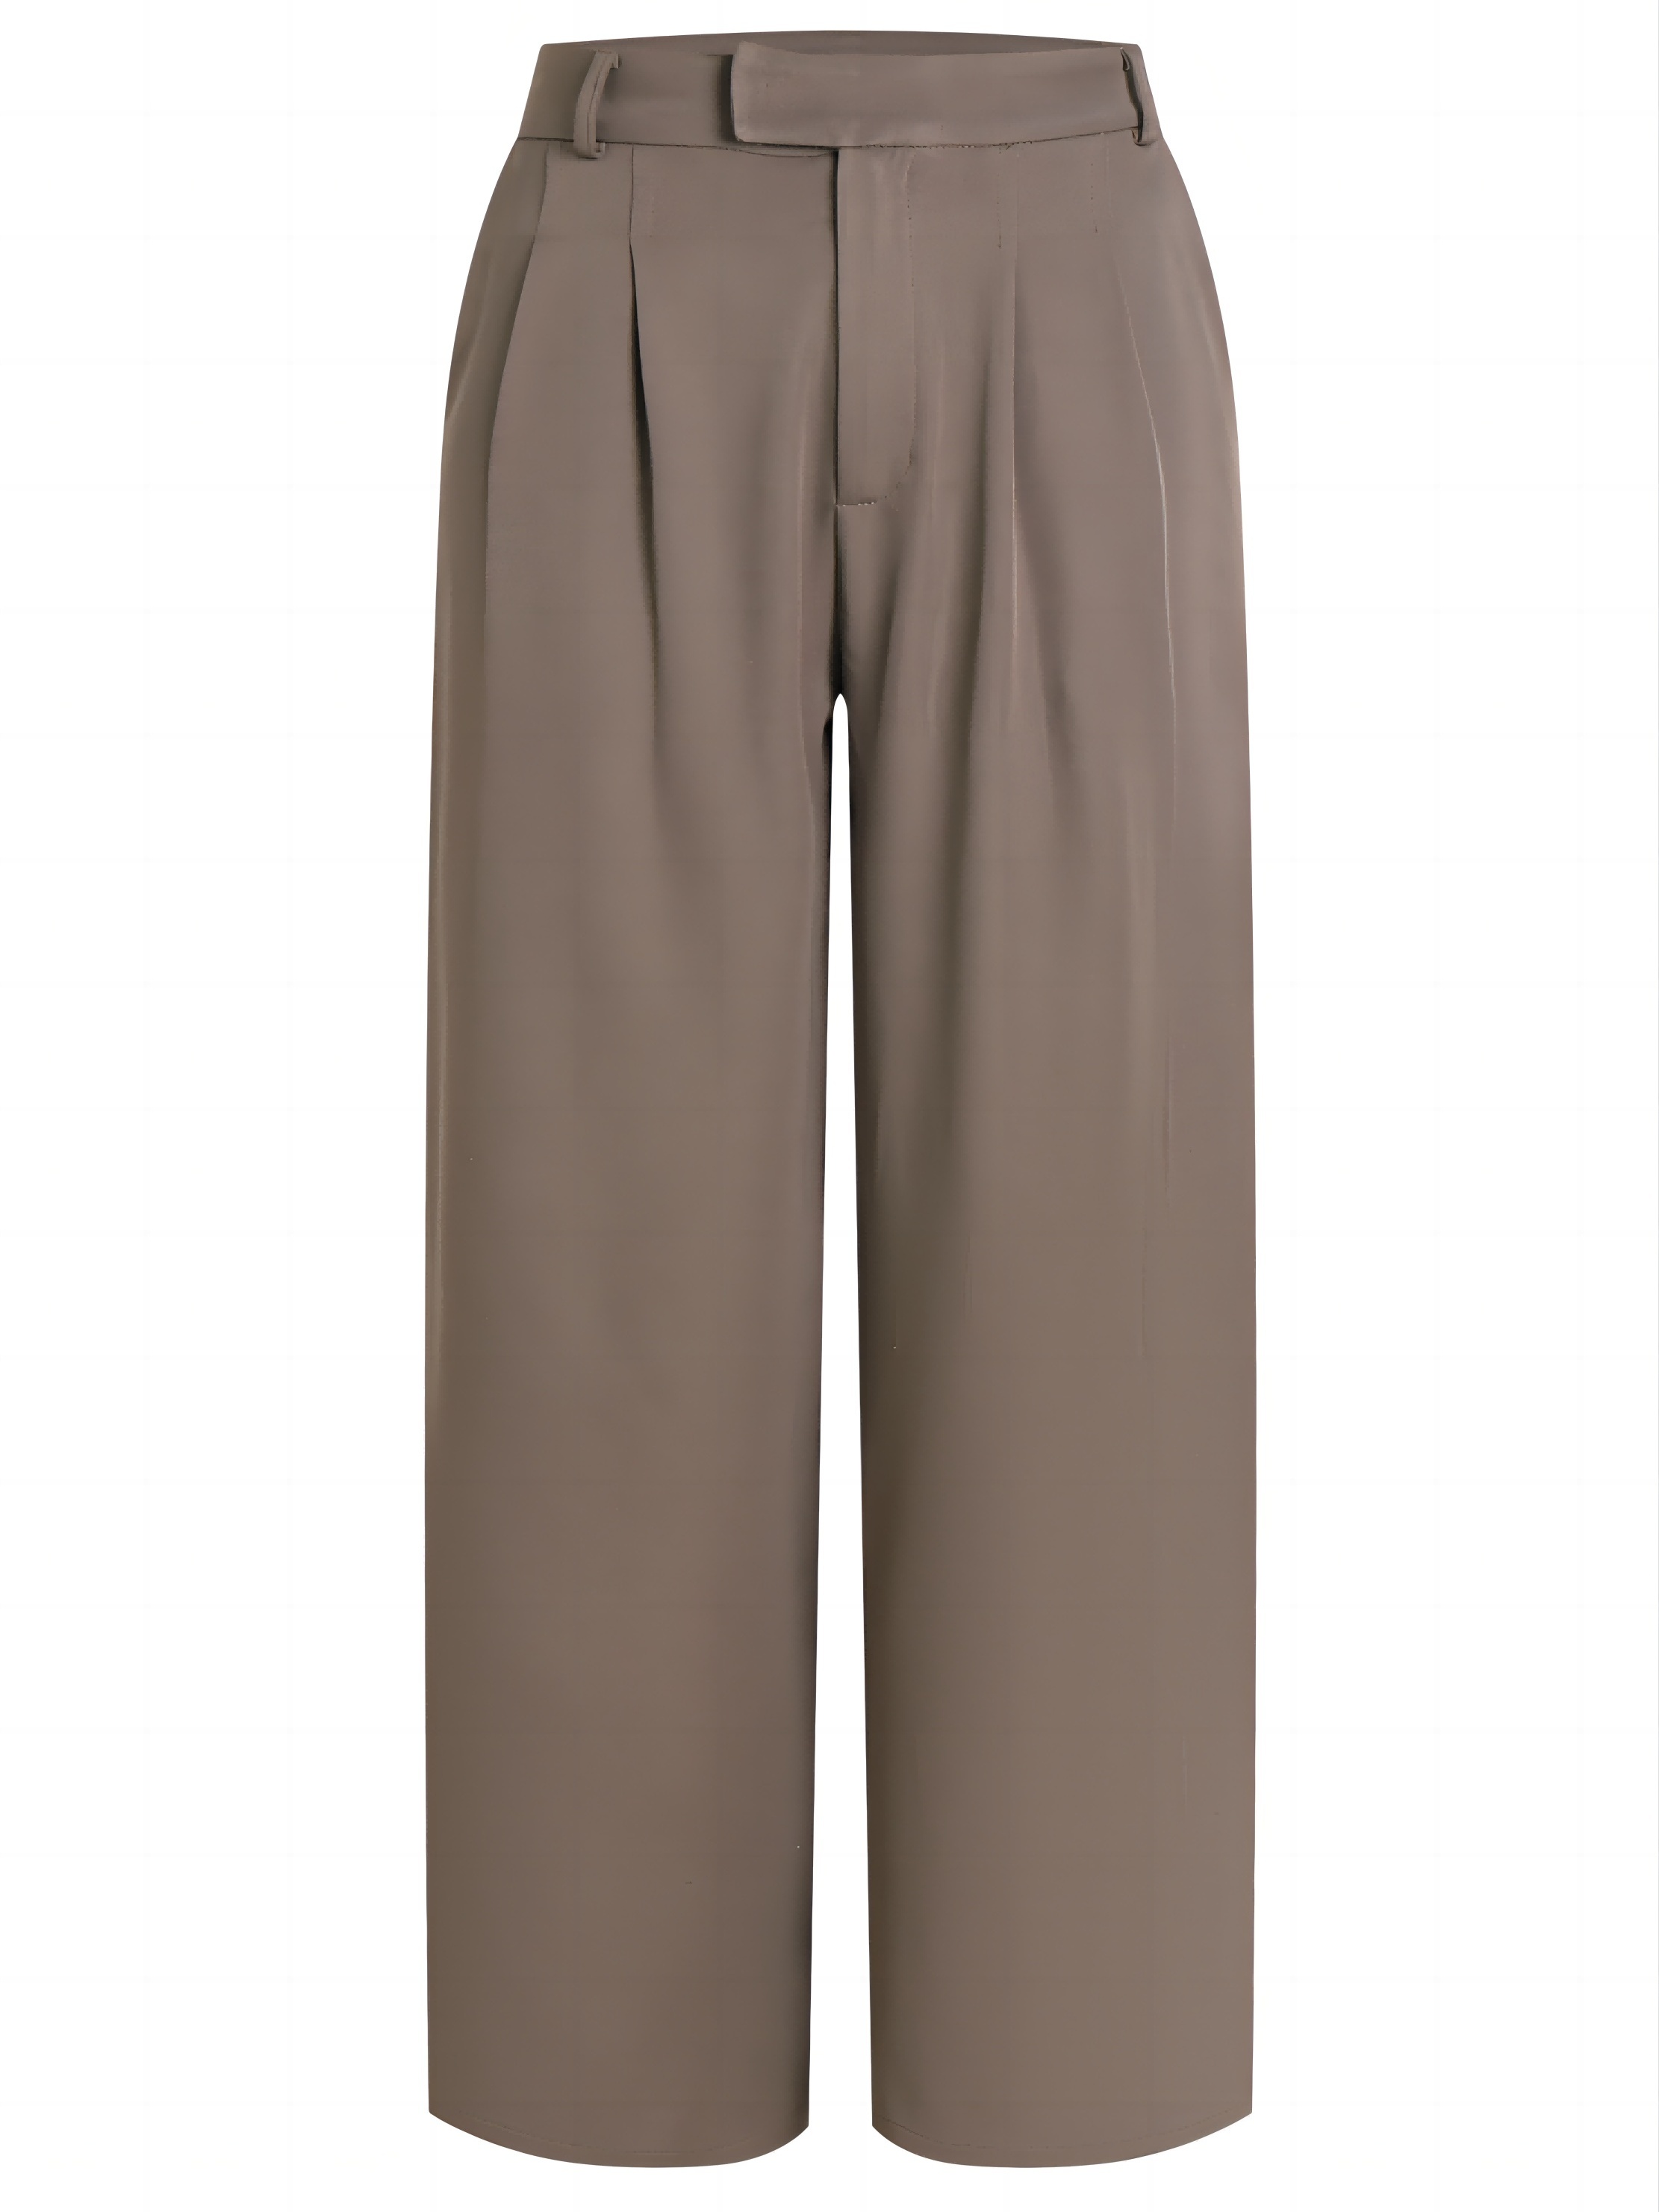 Pantalones sólidos largos de pierna ancha para mujer, pantalones elegantes  y con estilo para oficina y trabajo, ropa de mujer